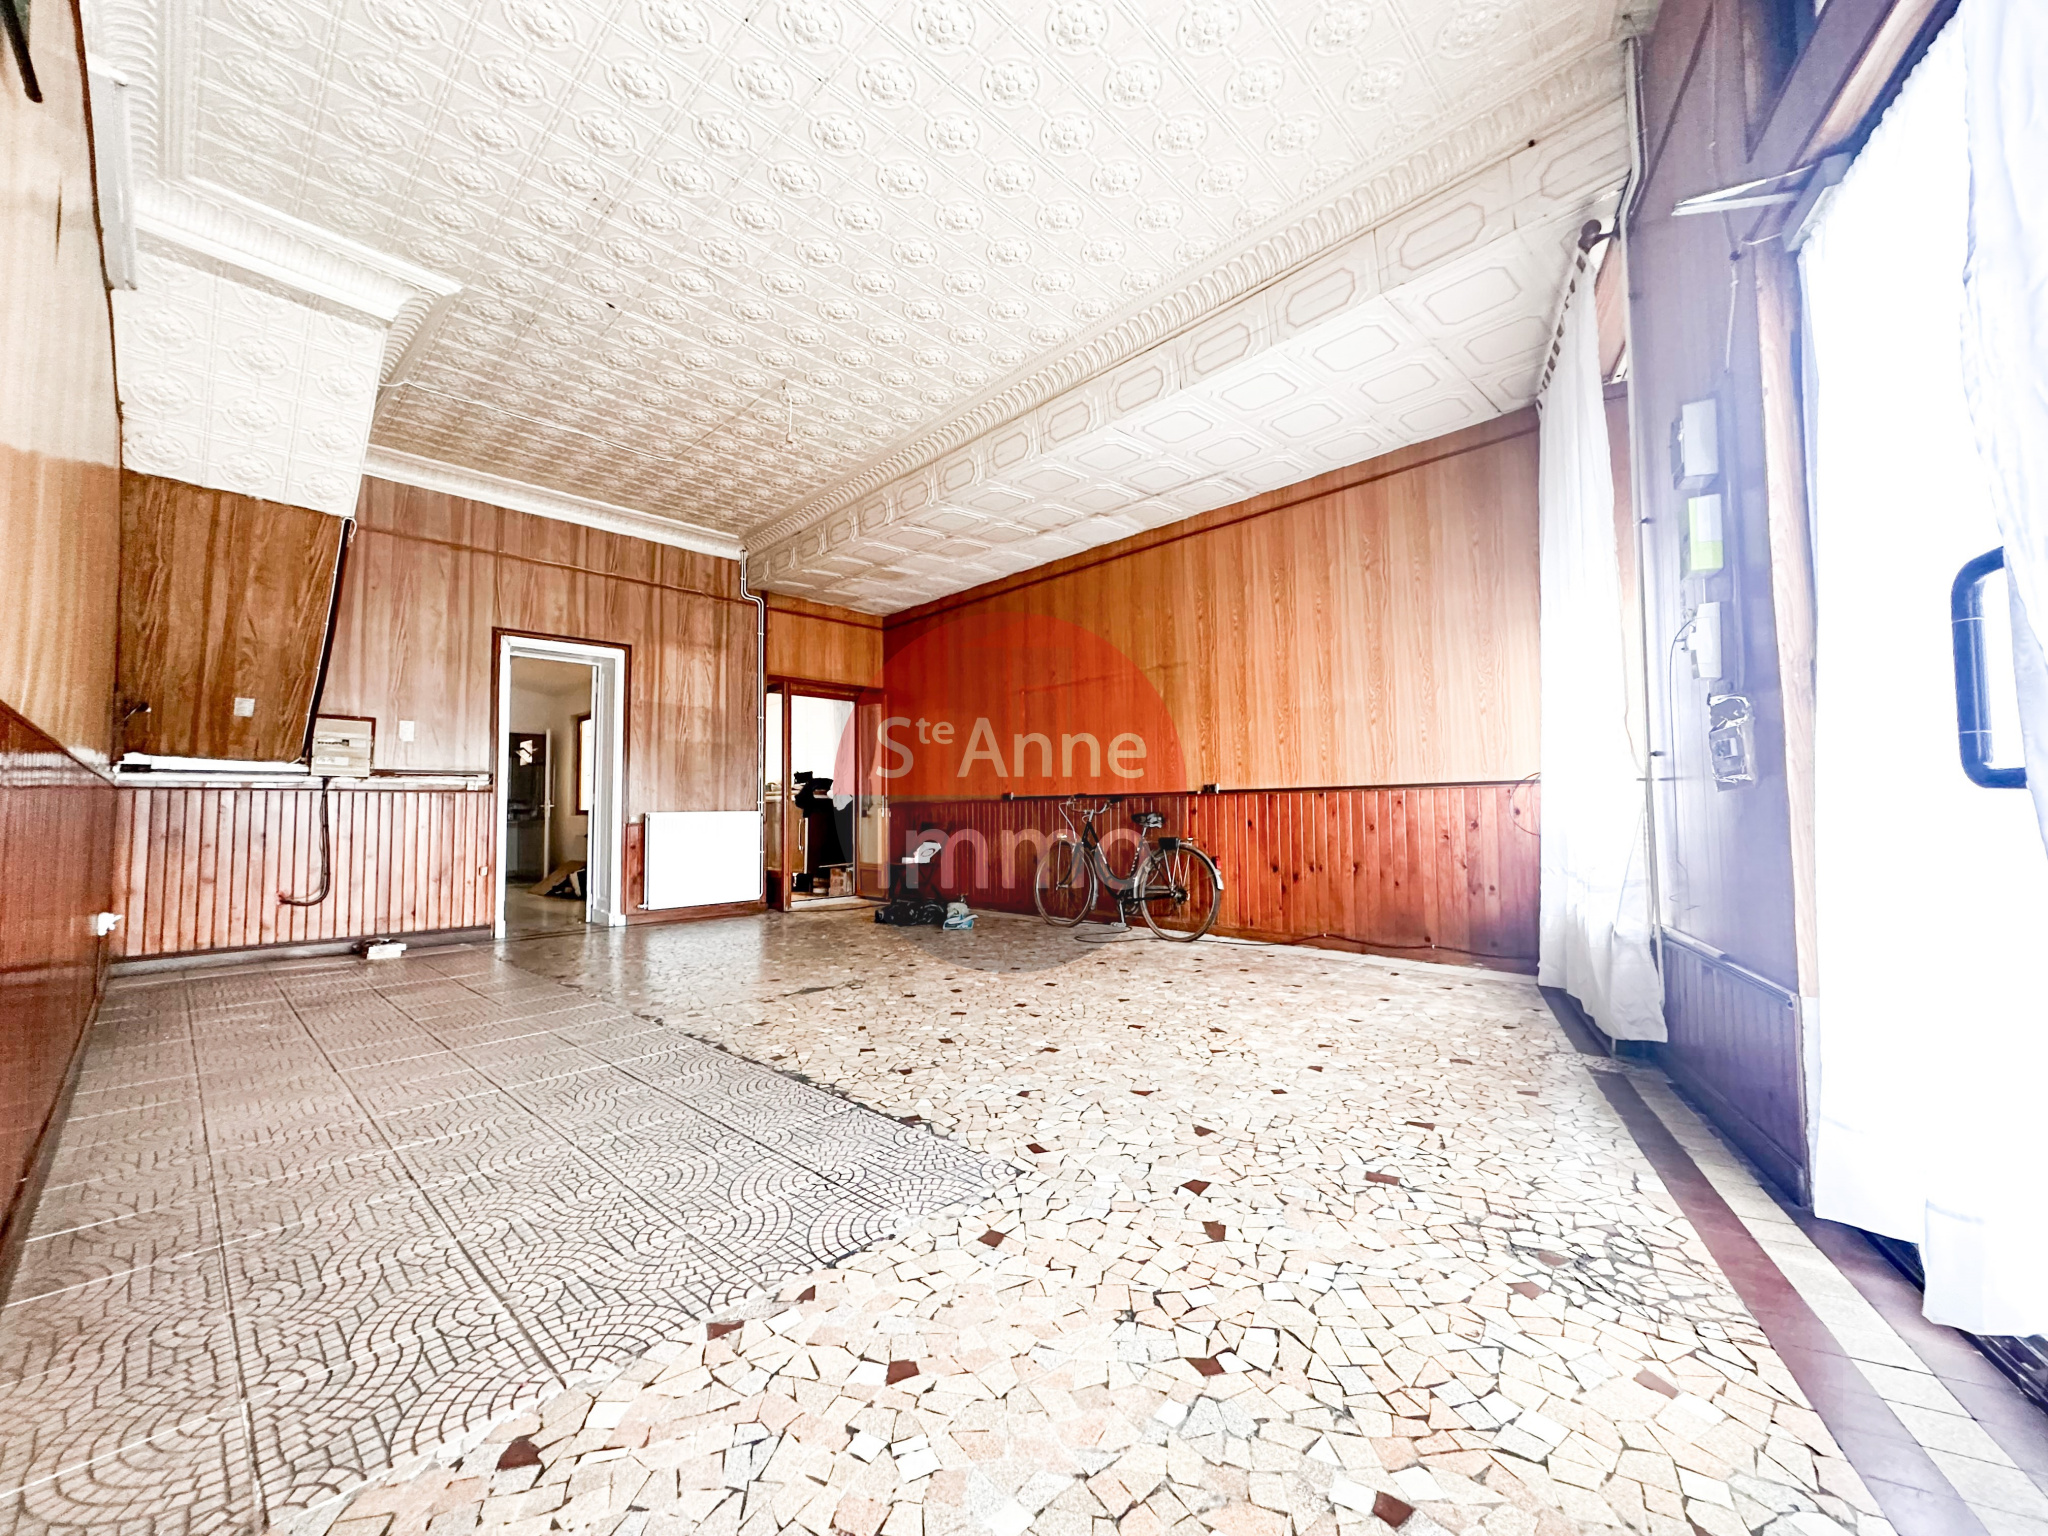 Immo80 – L'immobilier à Amiens et dans la Somme-Maison – 155 m2 – 4 chambres – dépendance – cave – cour